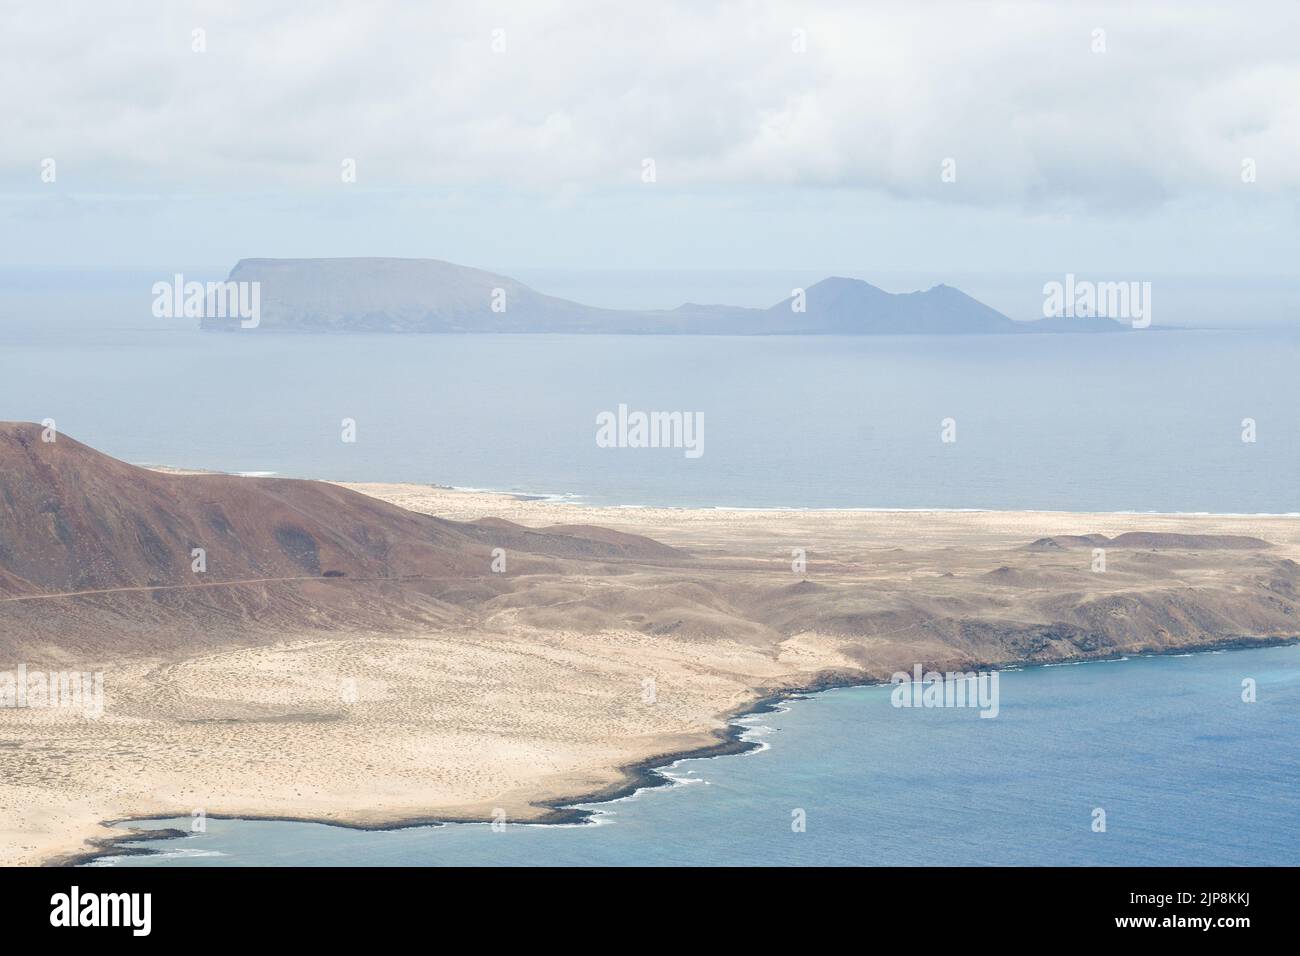 Island of La Graciosa and Isla de la Alegranza from the Mirador del Río in Lanzarote Stock Photo